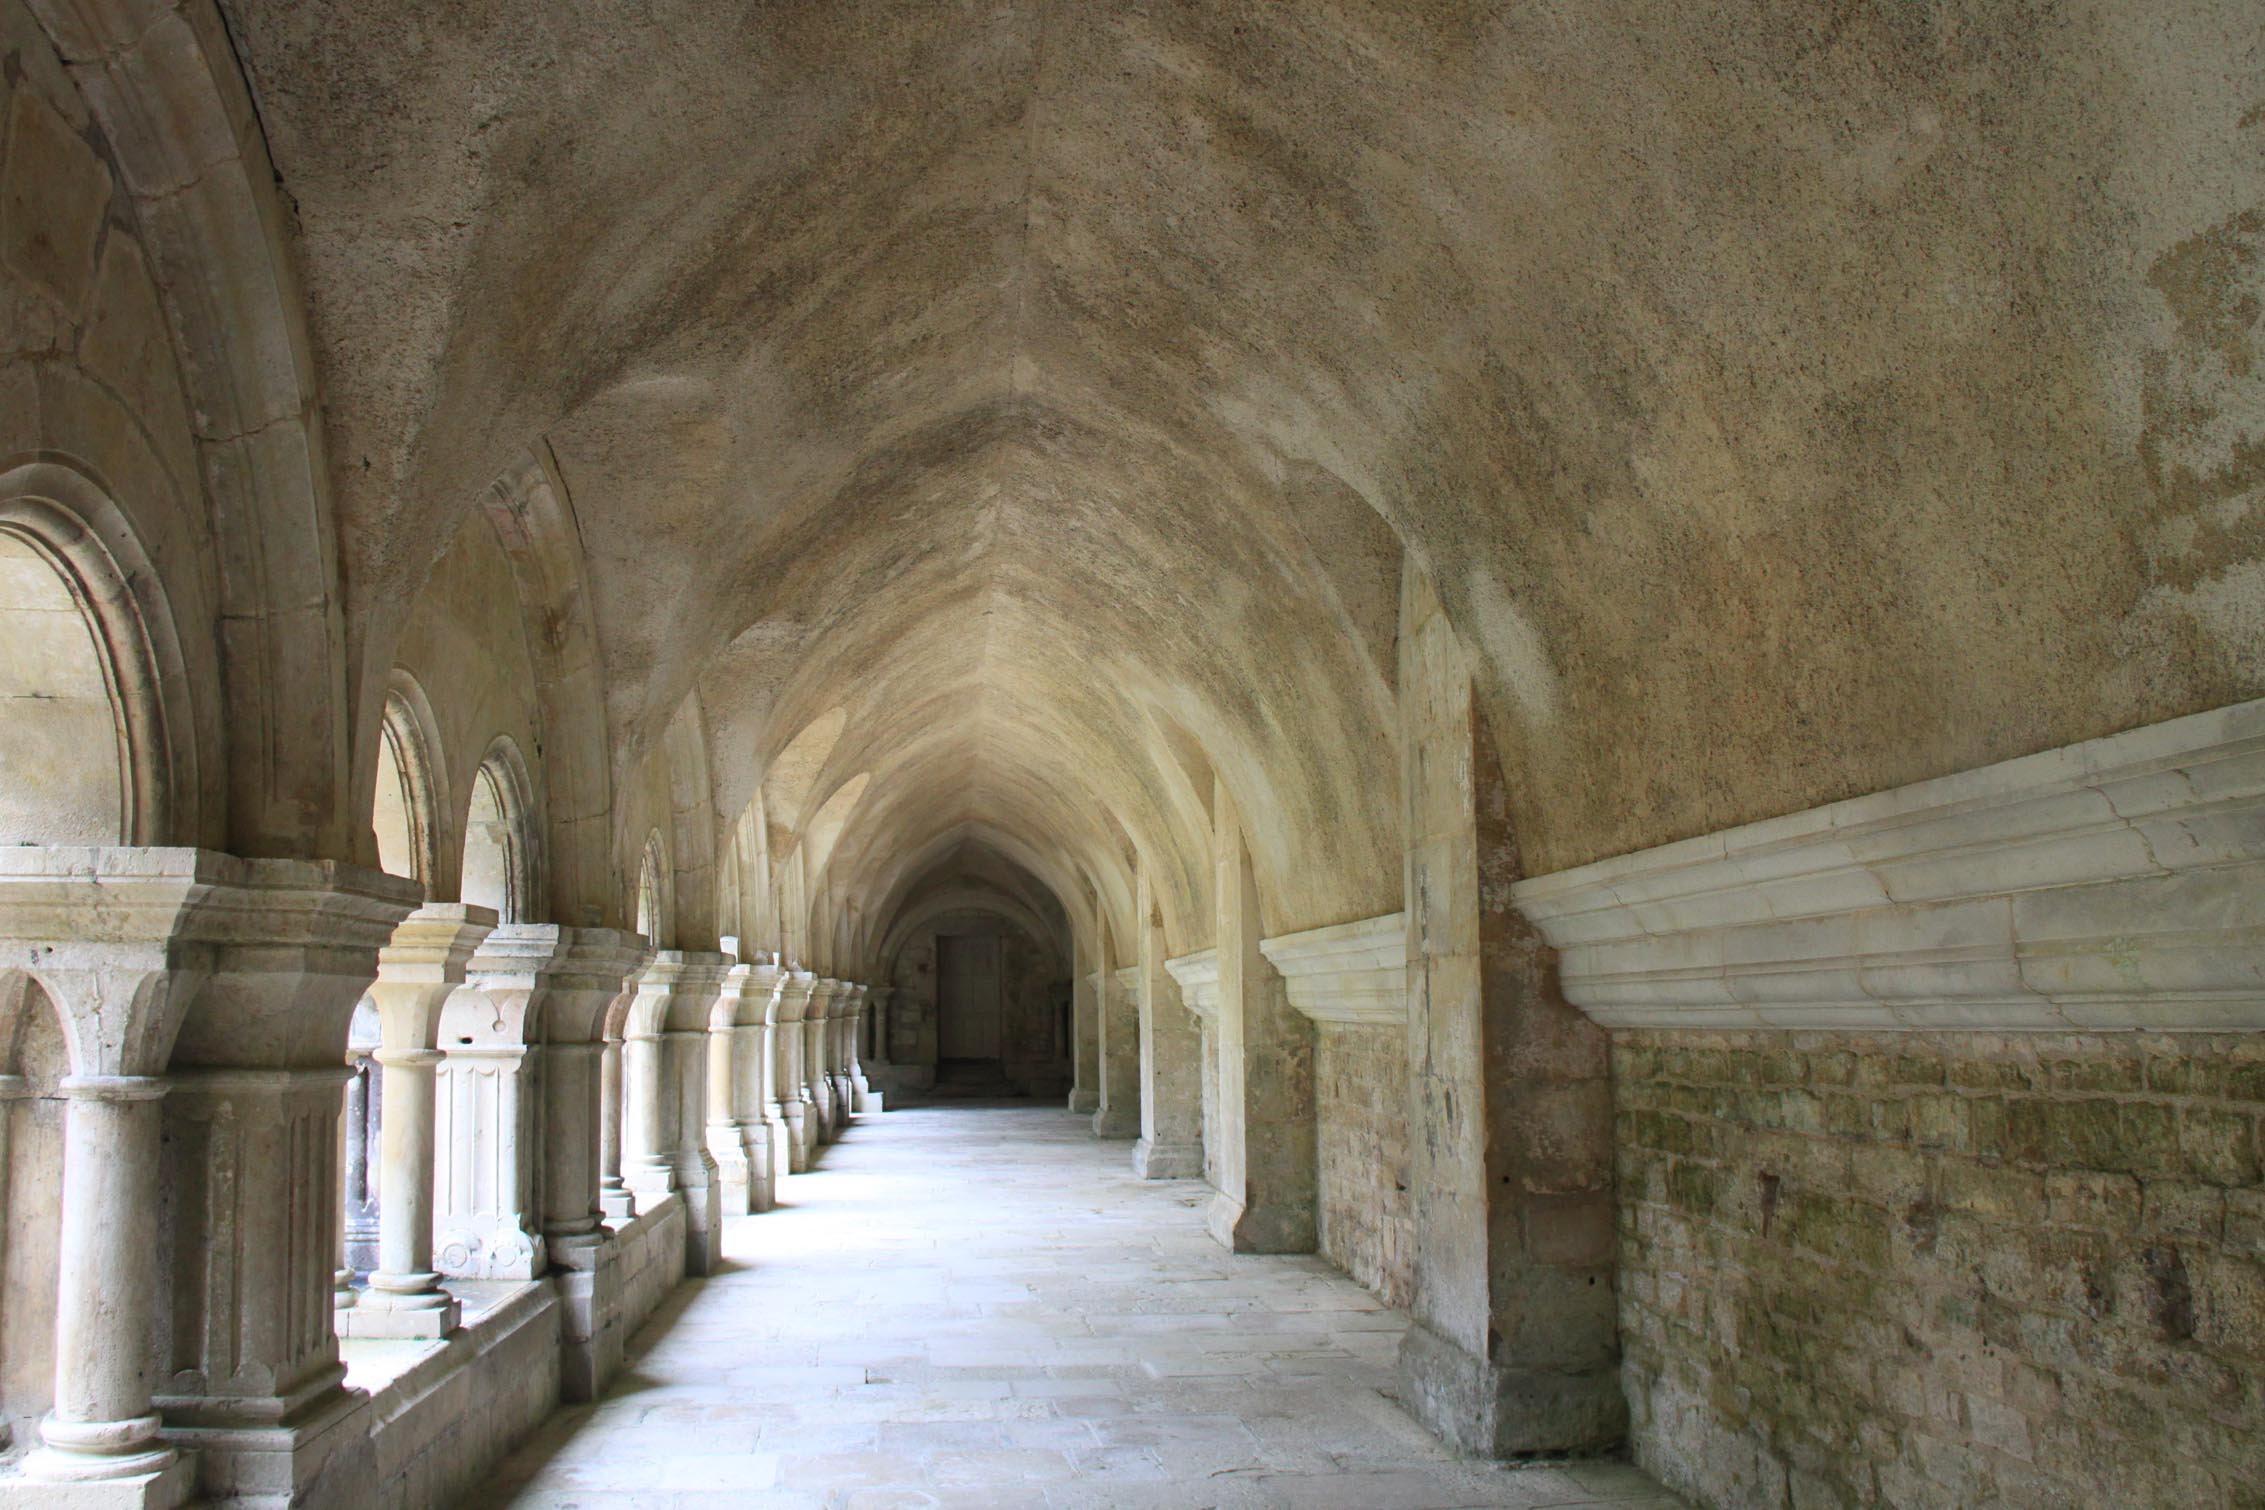 Eglises et abbayes Bourguignonnes : Abbaye de Fontenay (3)